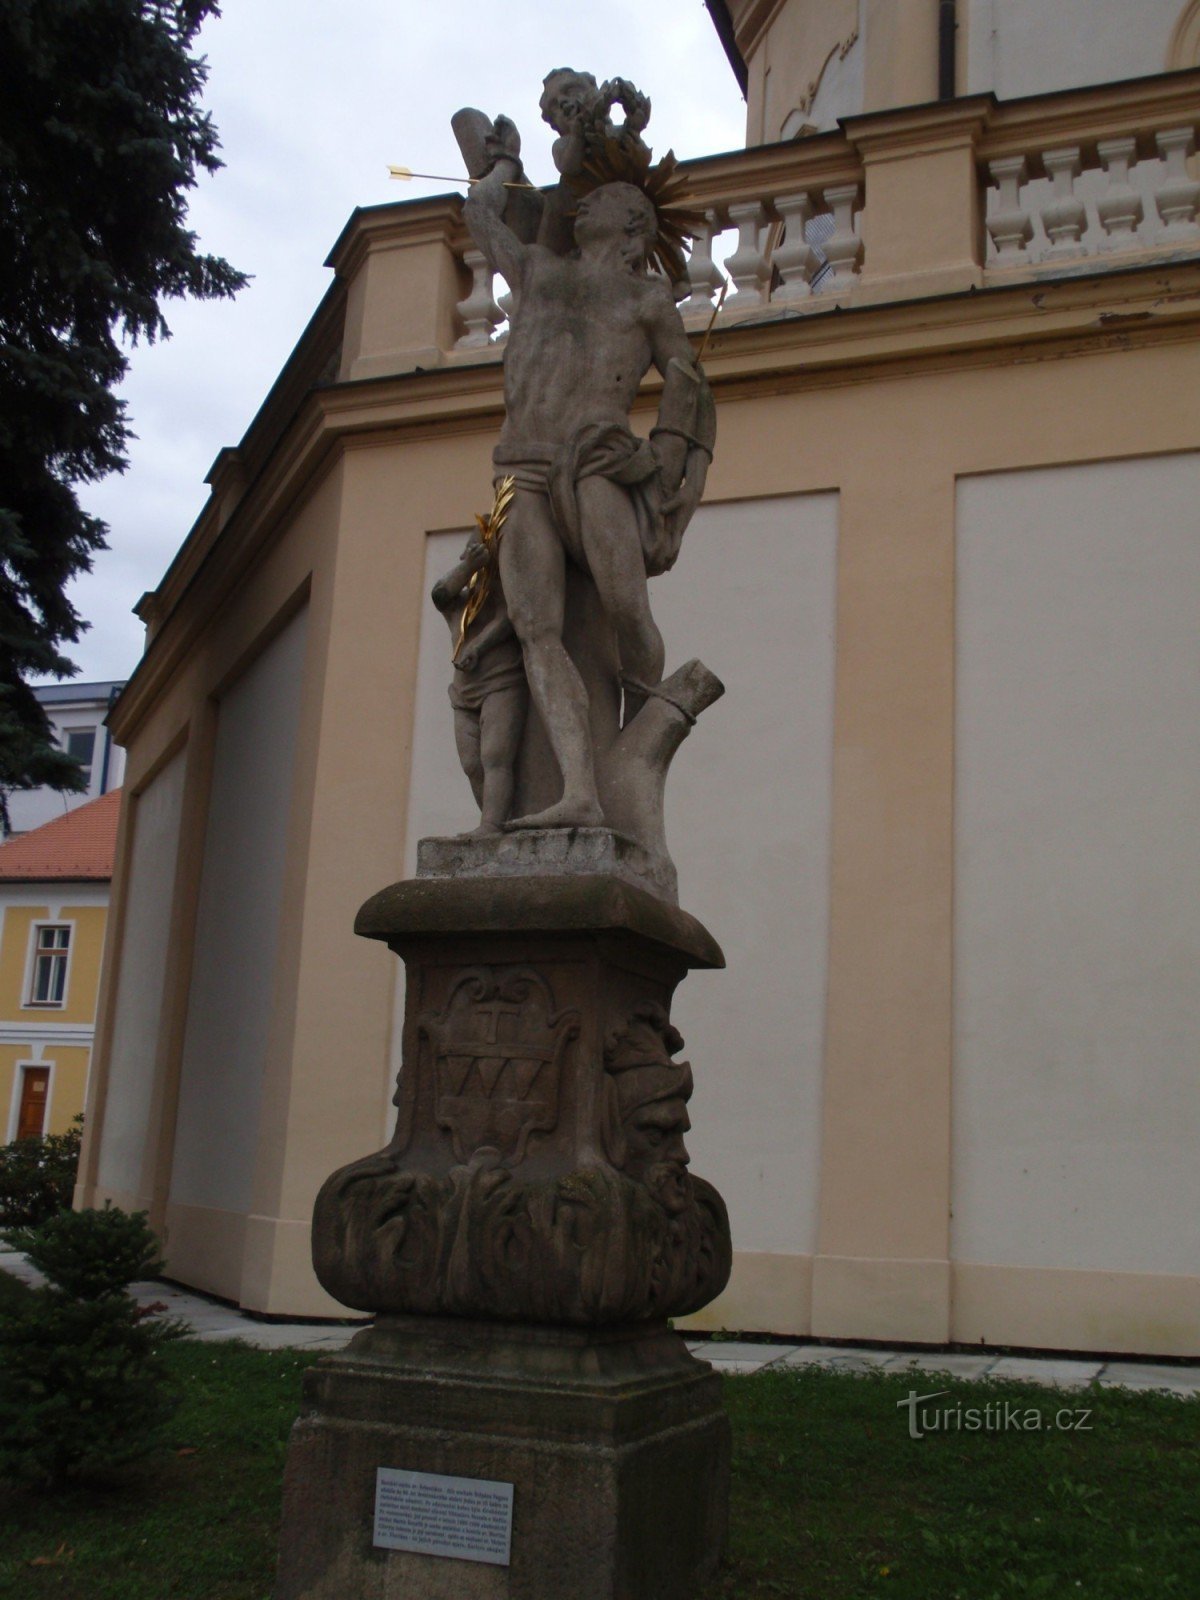 圣雕像特热比奇的塞贝斯蒂安